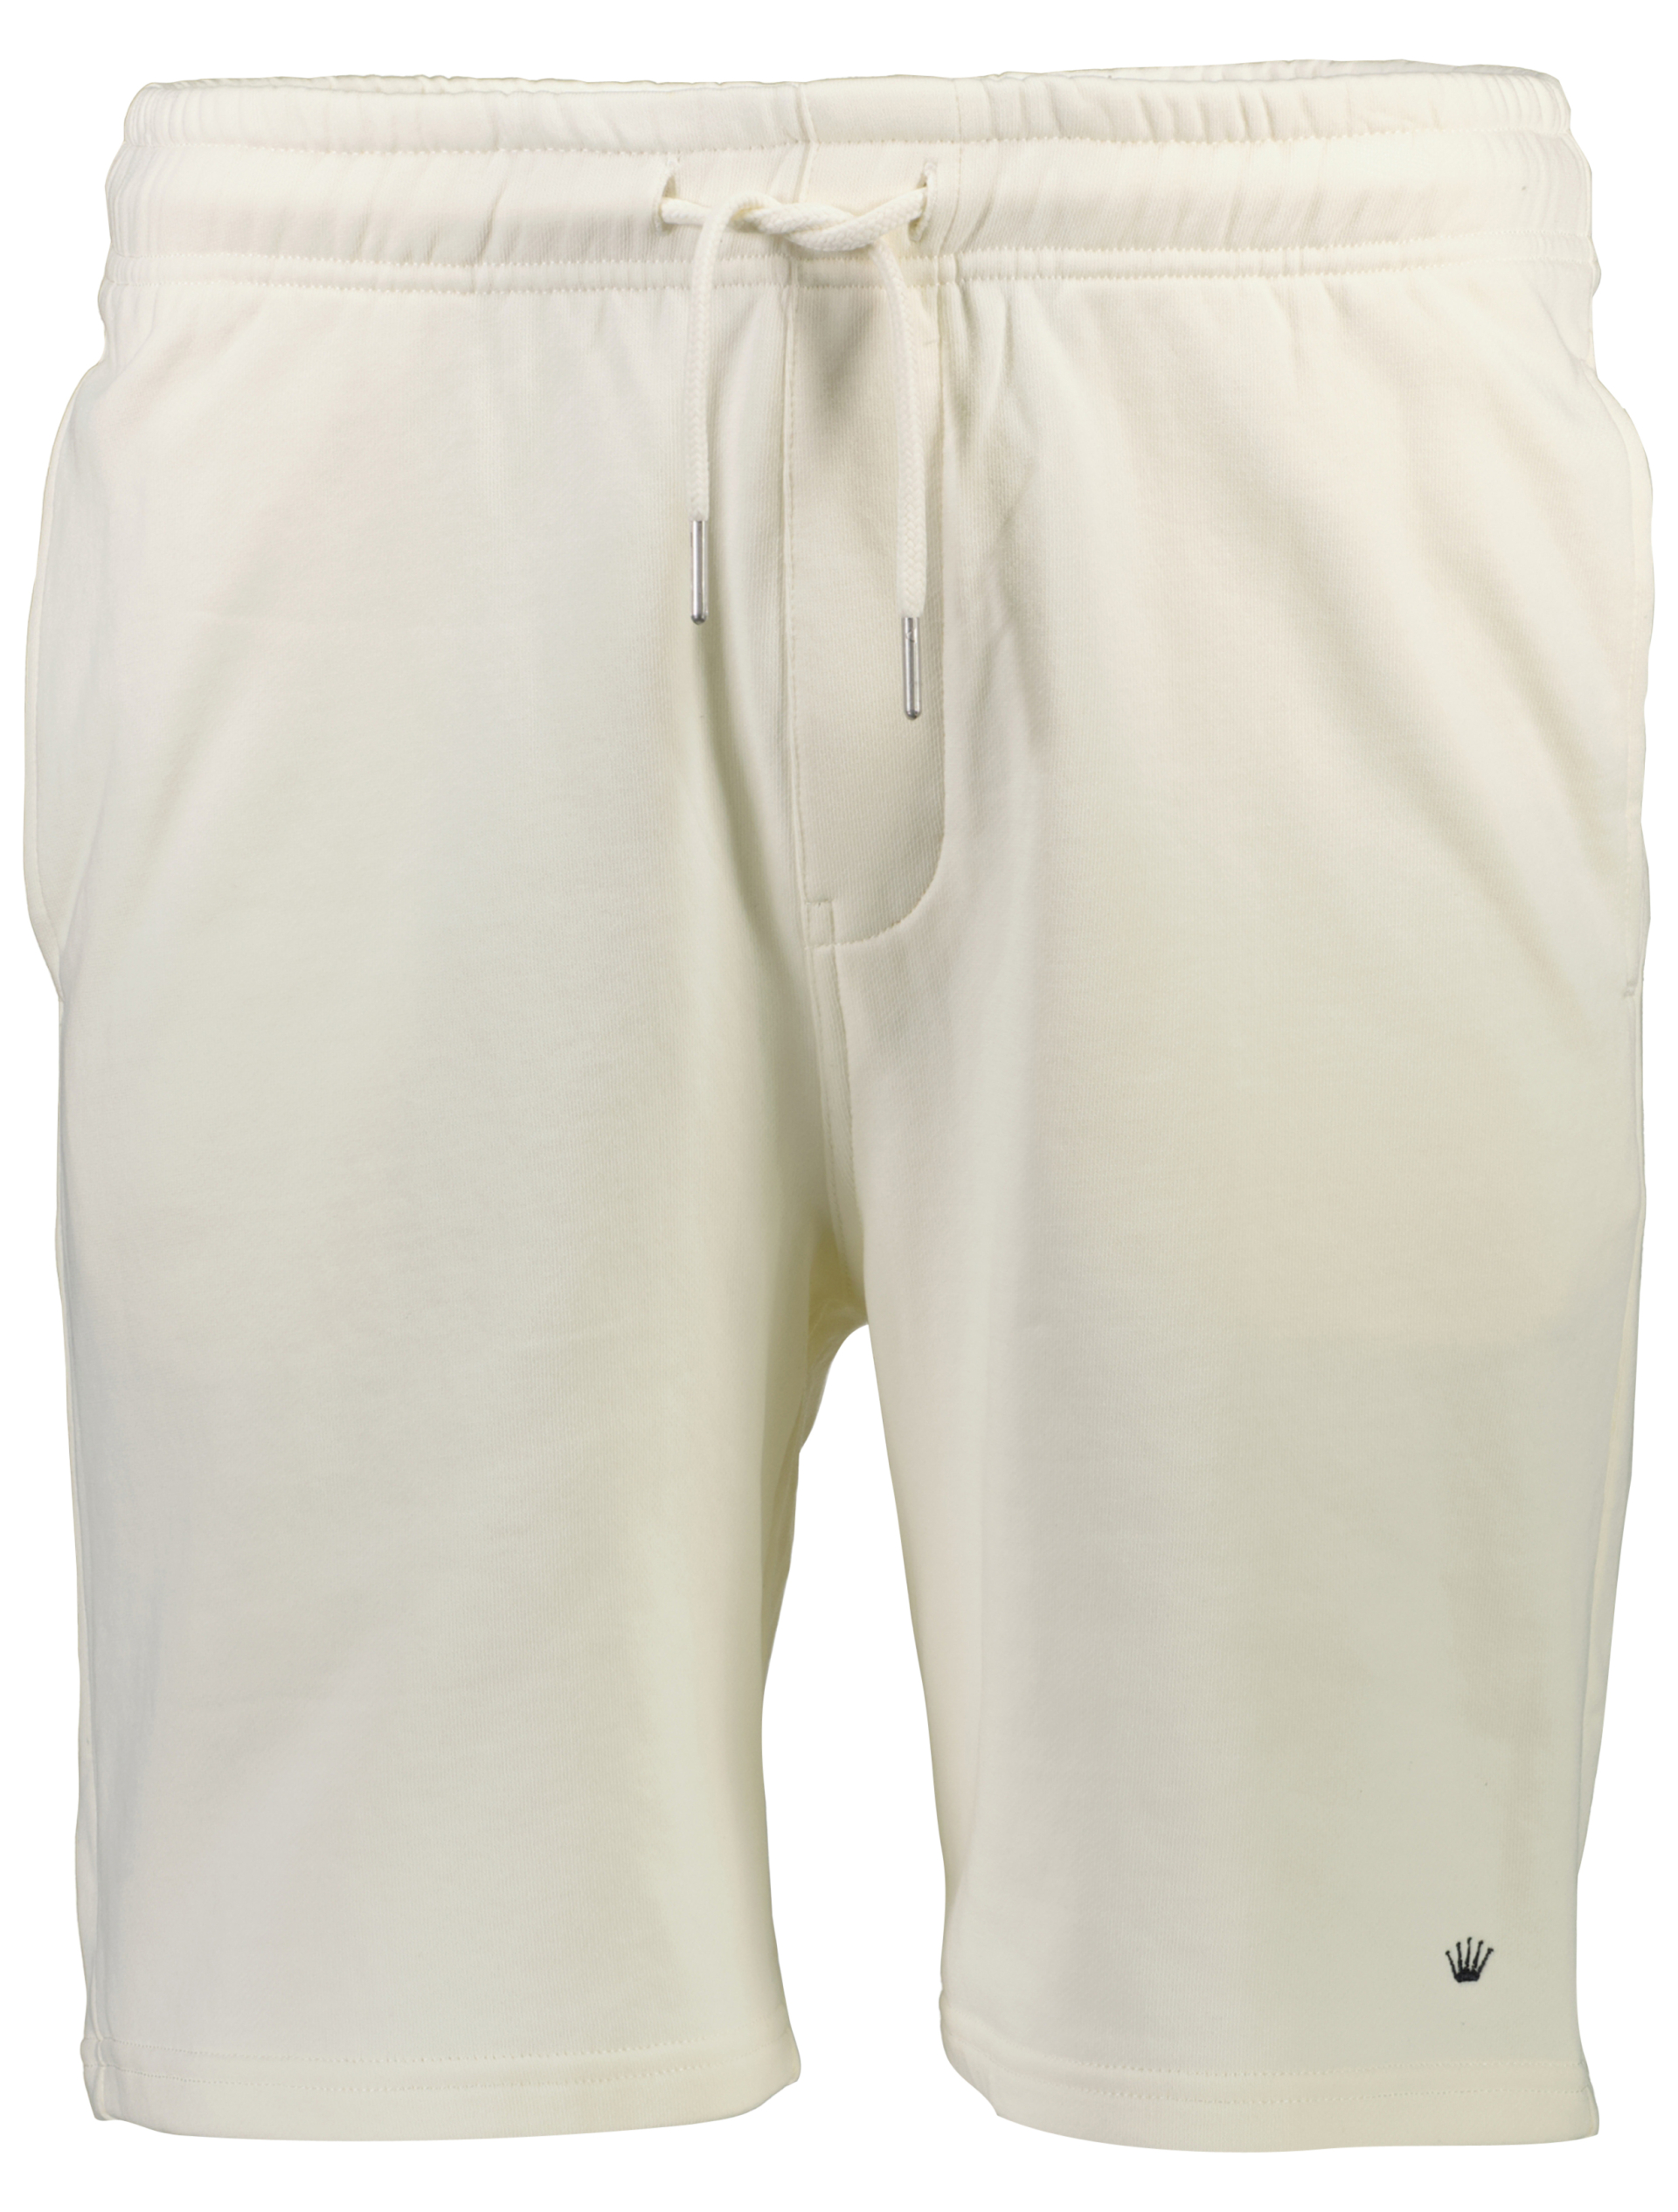 Junk de Luxe Casual shorts vit / off white